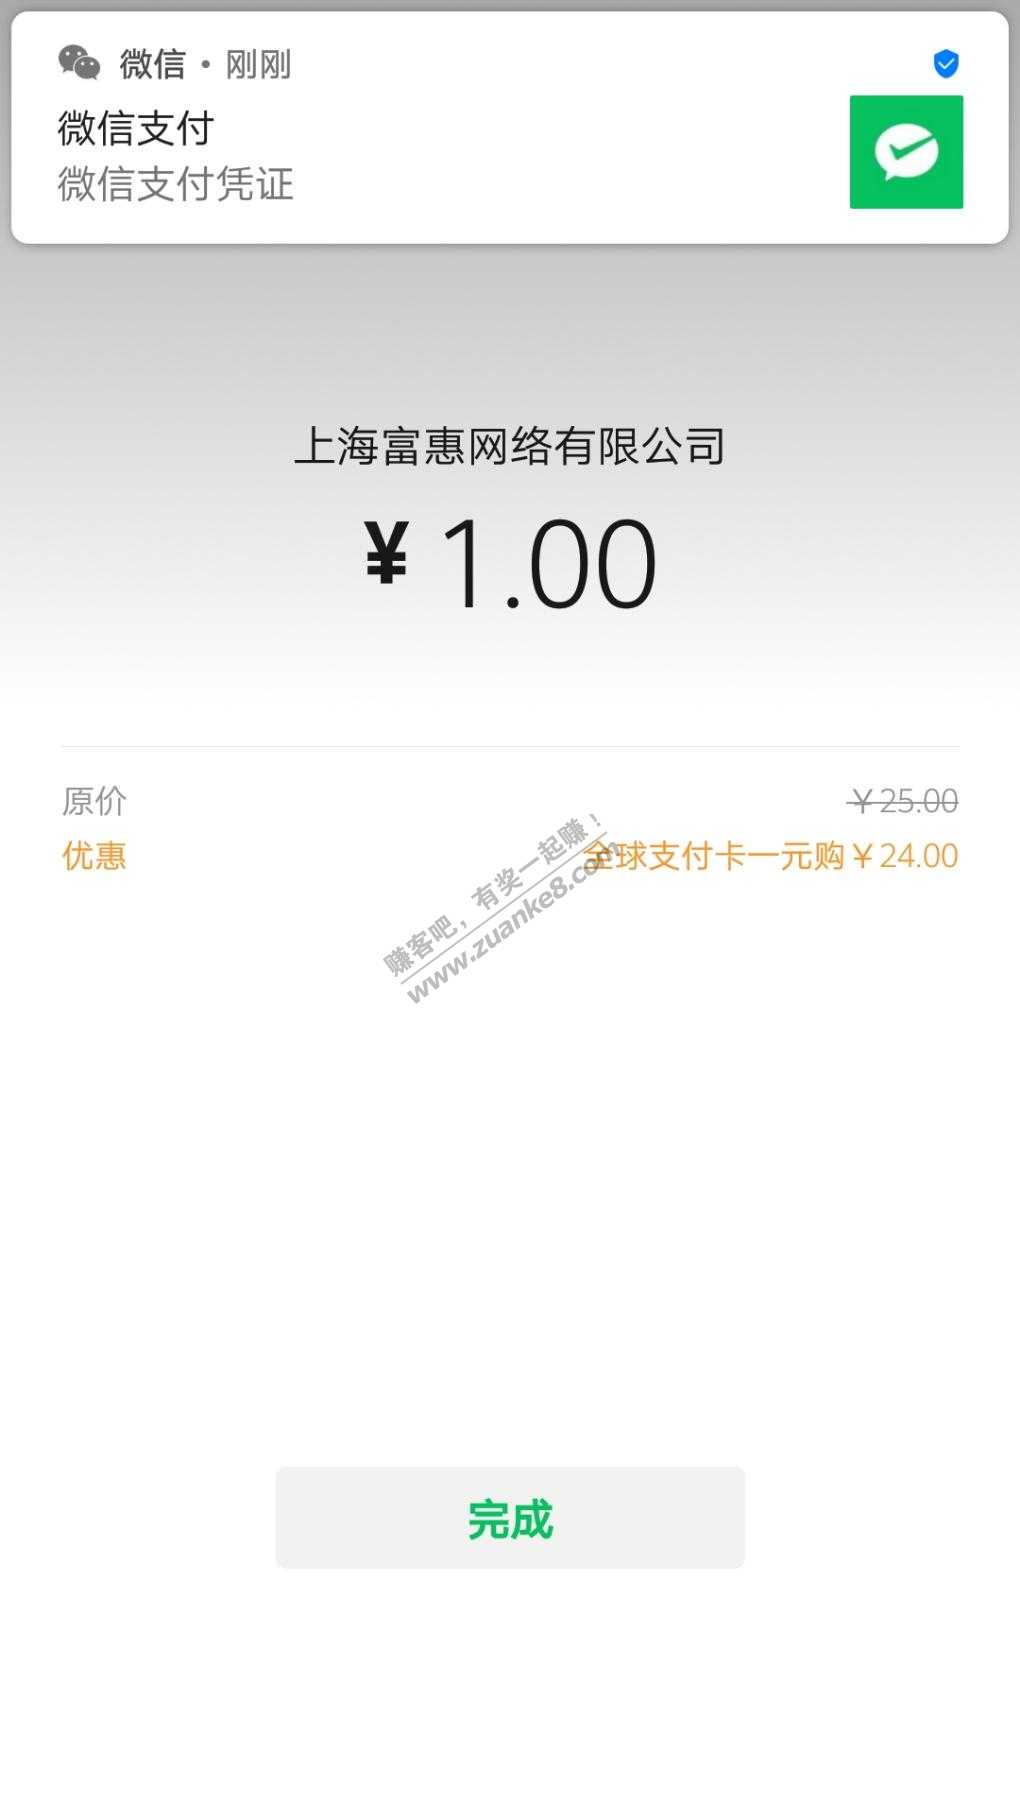 建行龙卡全球支付Visaxing/用卡-1买20毛-惠小助(52huixz.com)